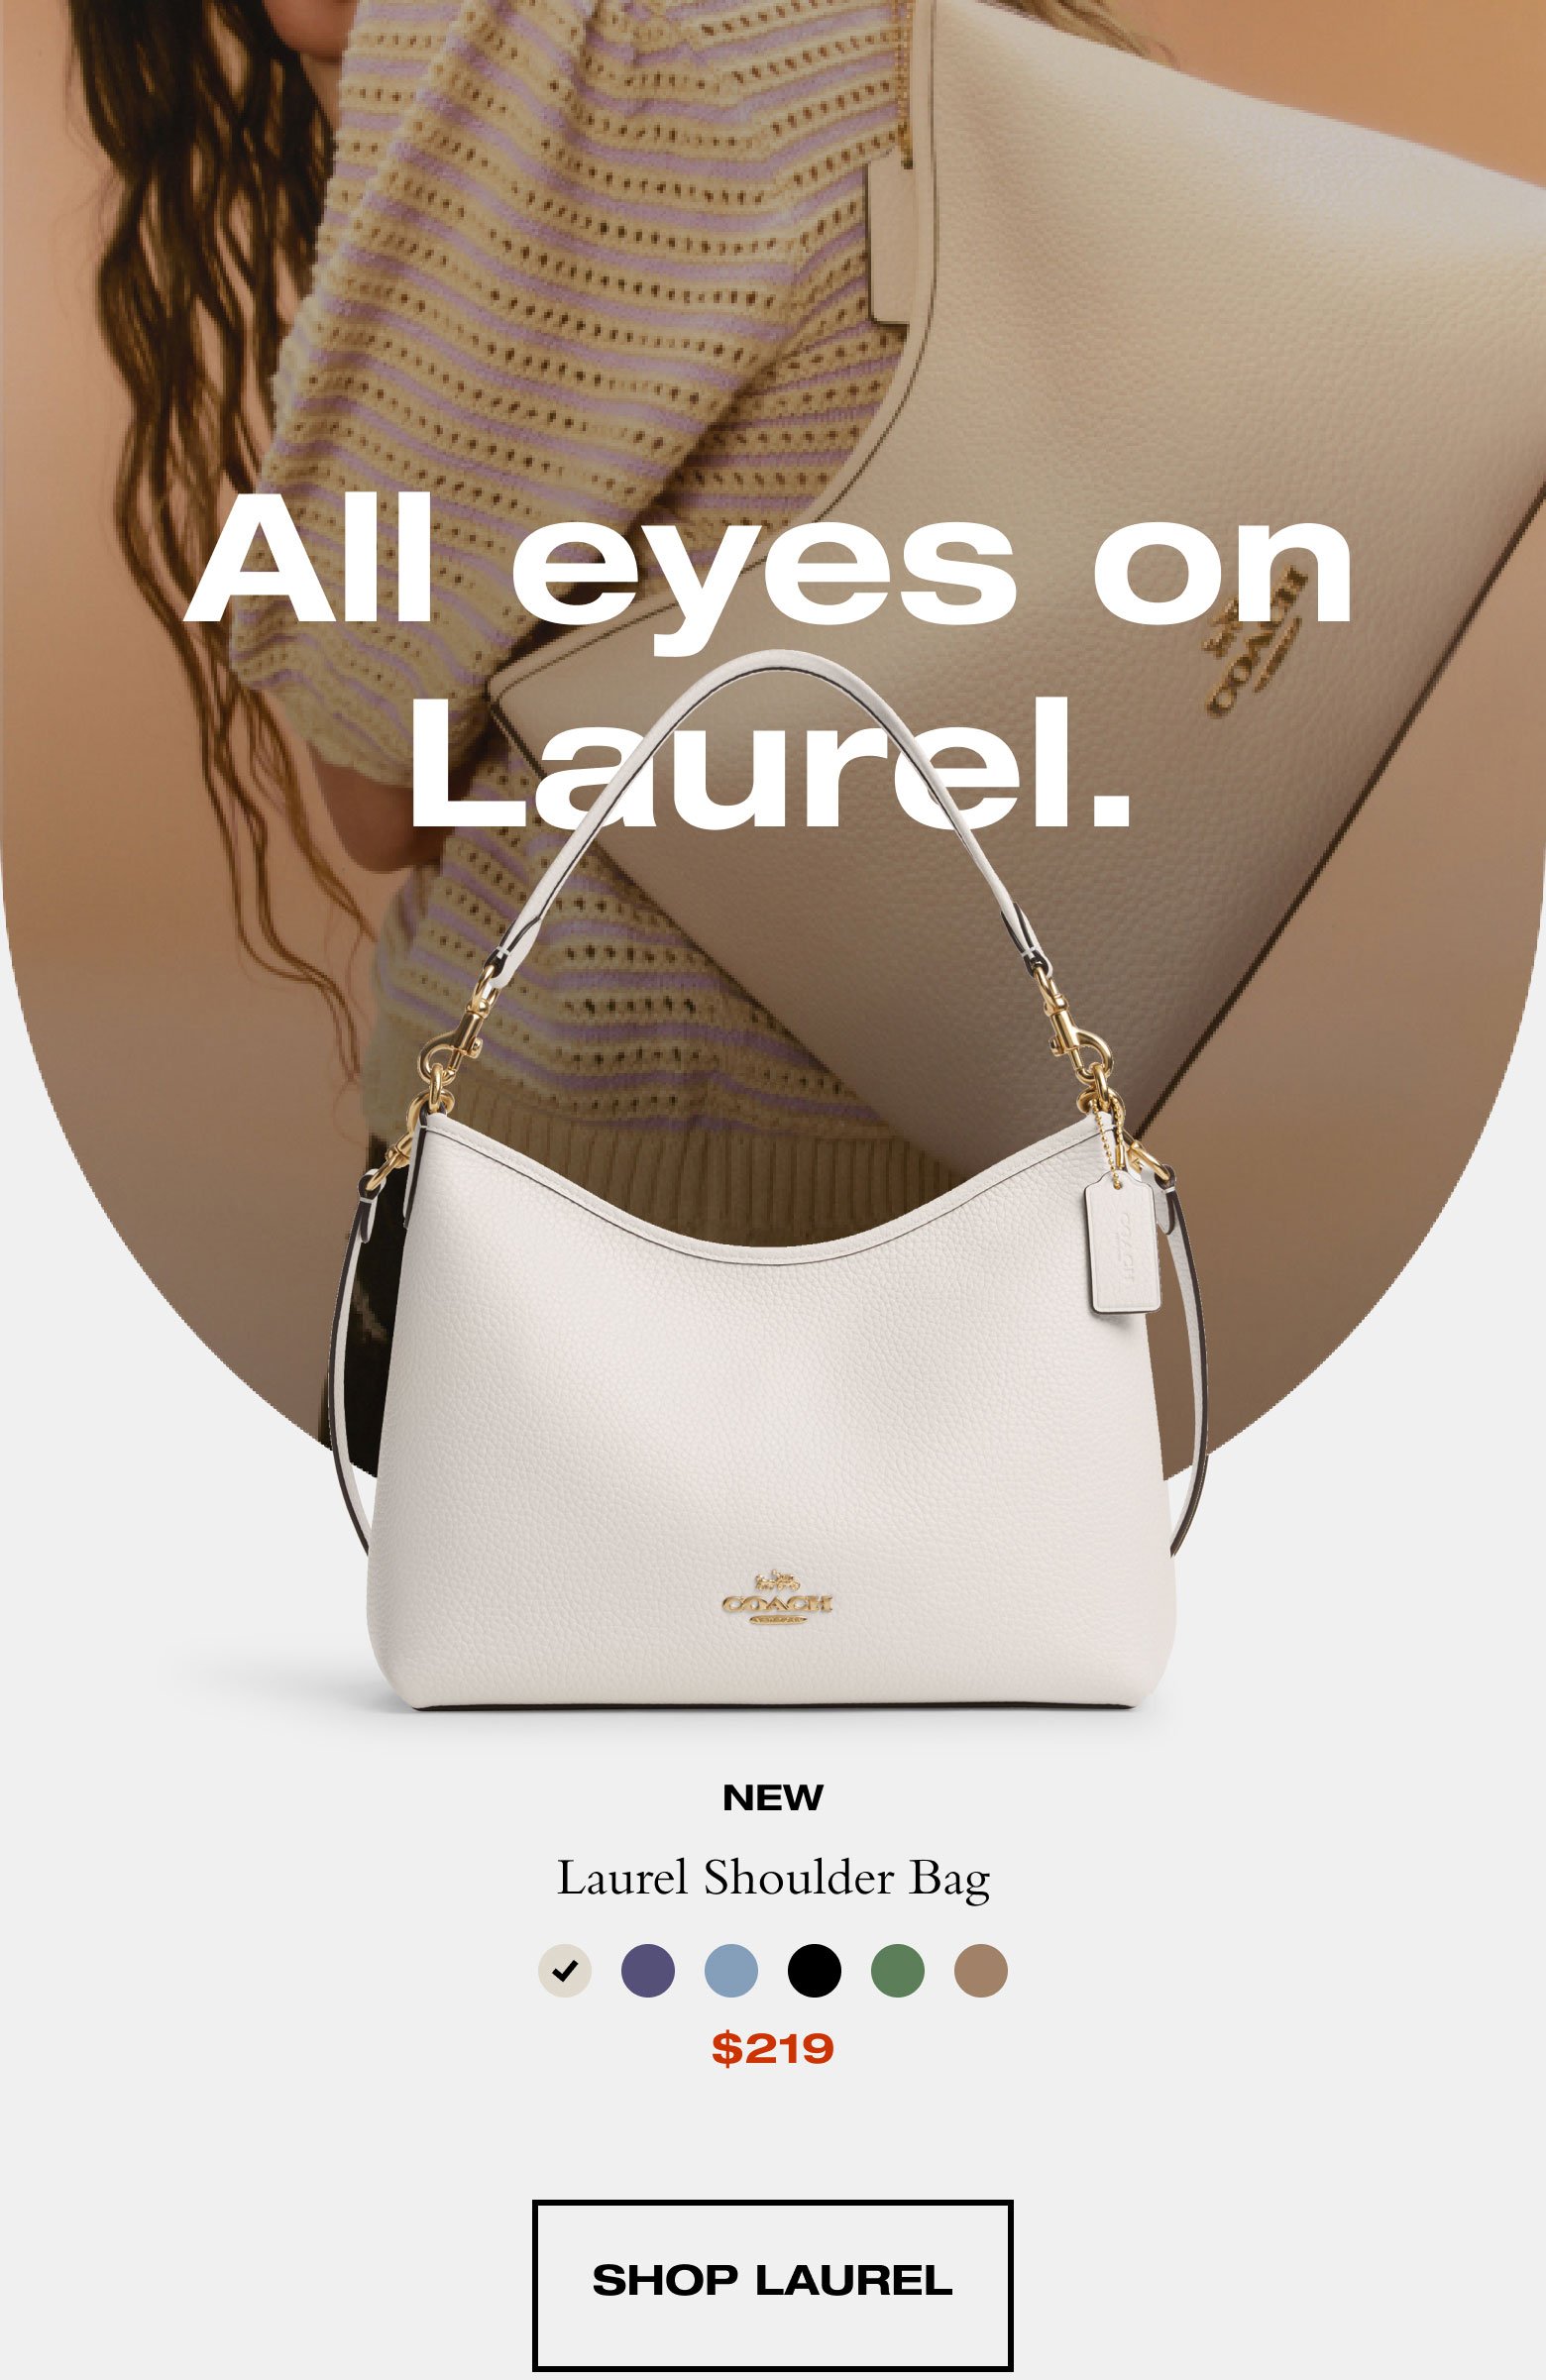 All eyes on Laurel. SHOP LAUREL